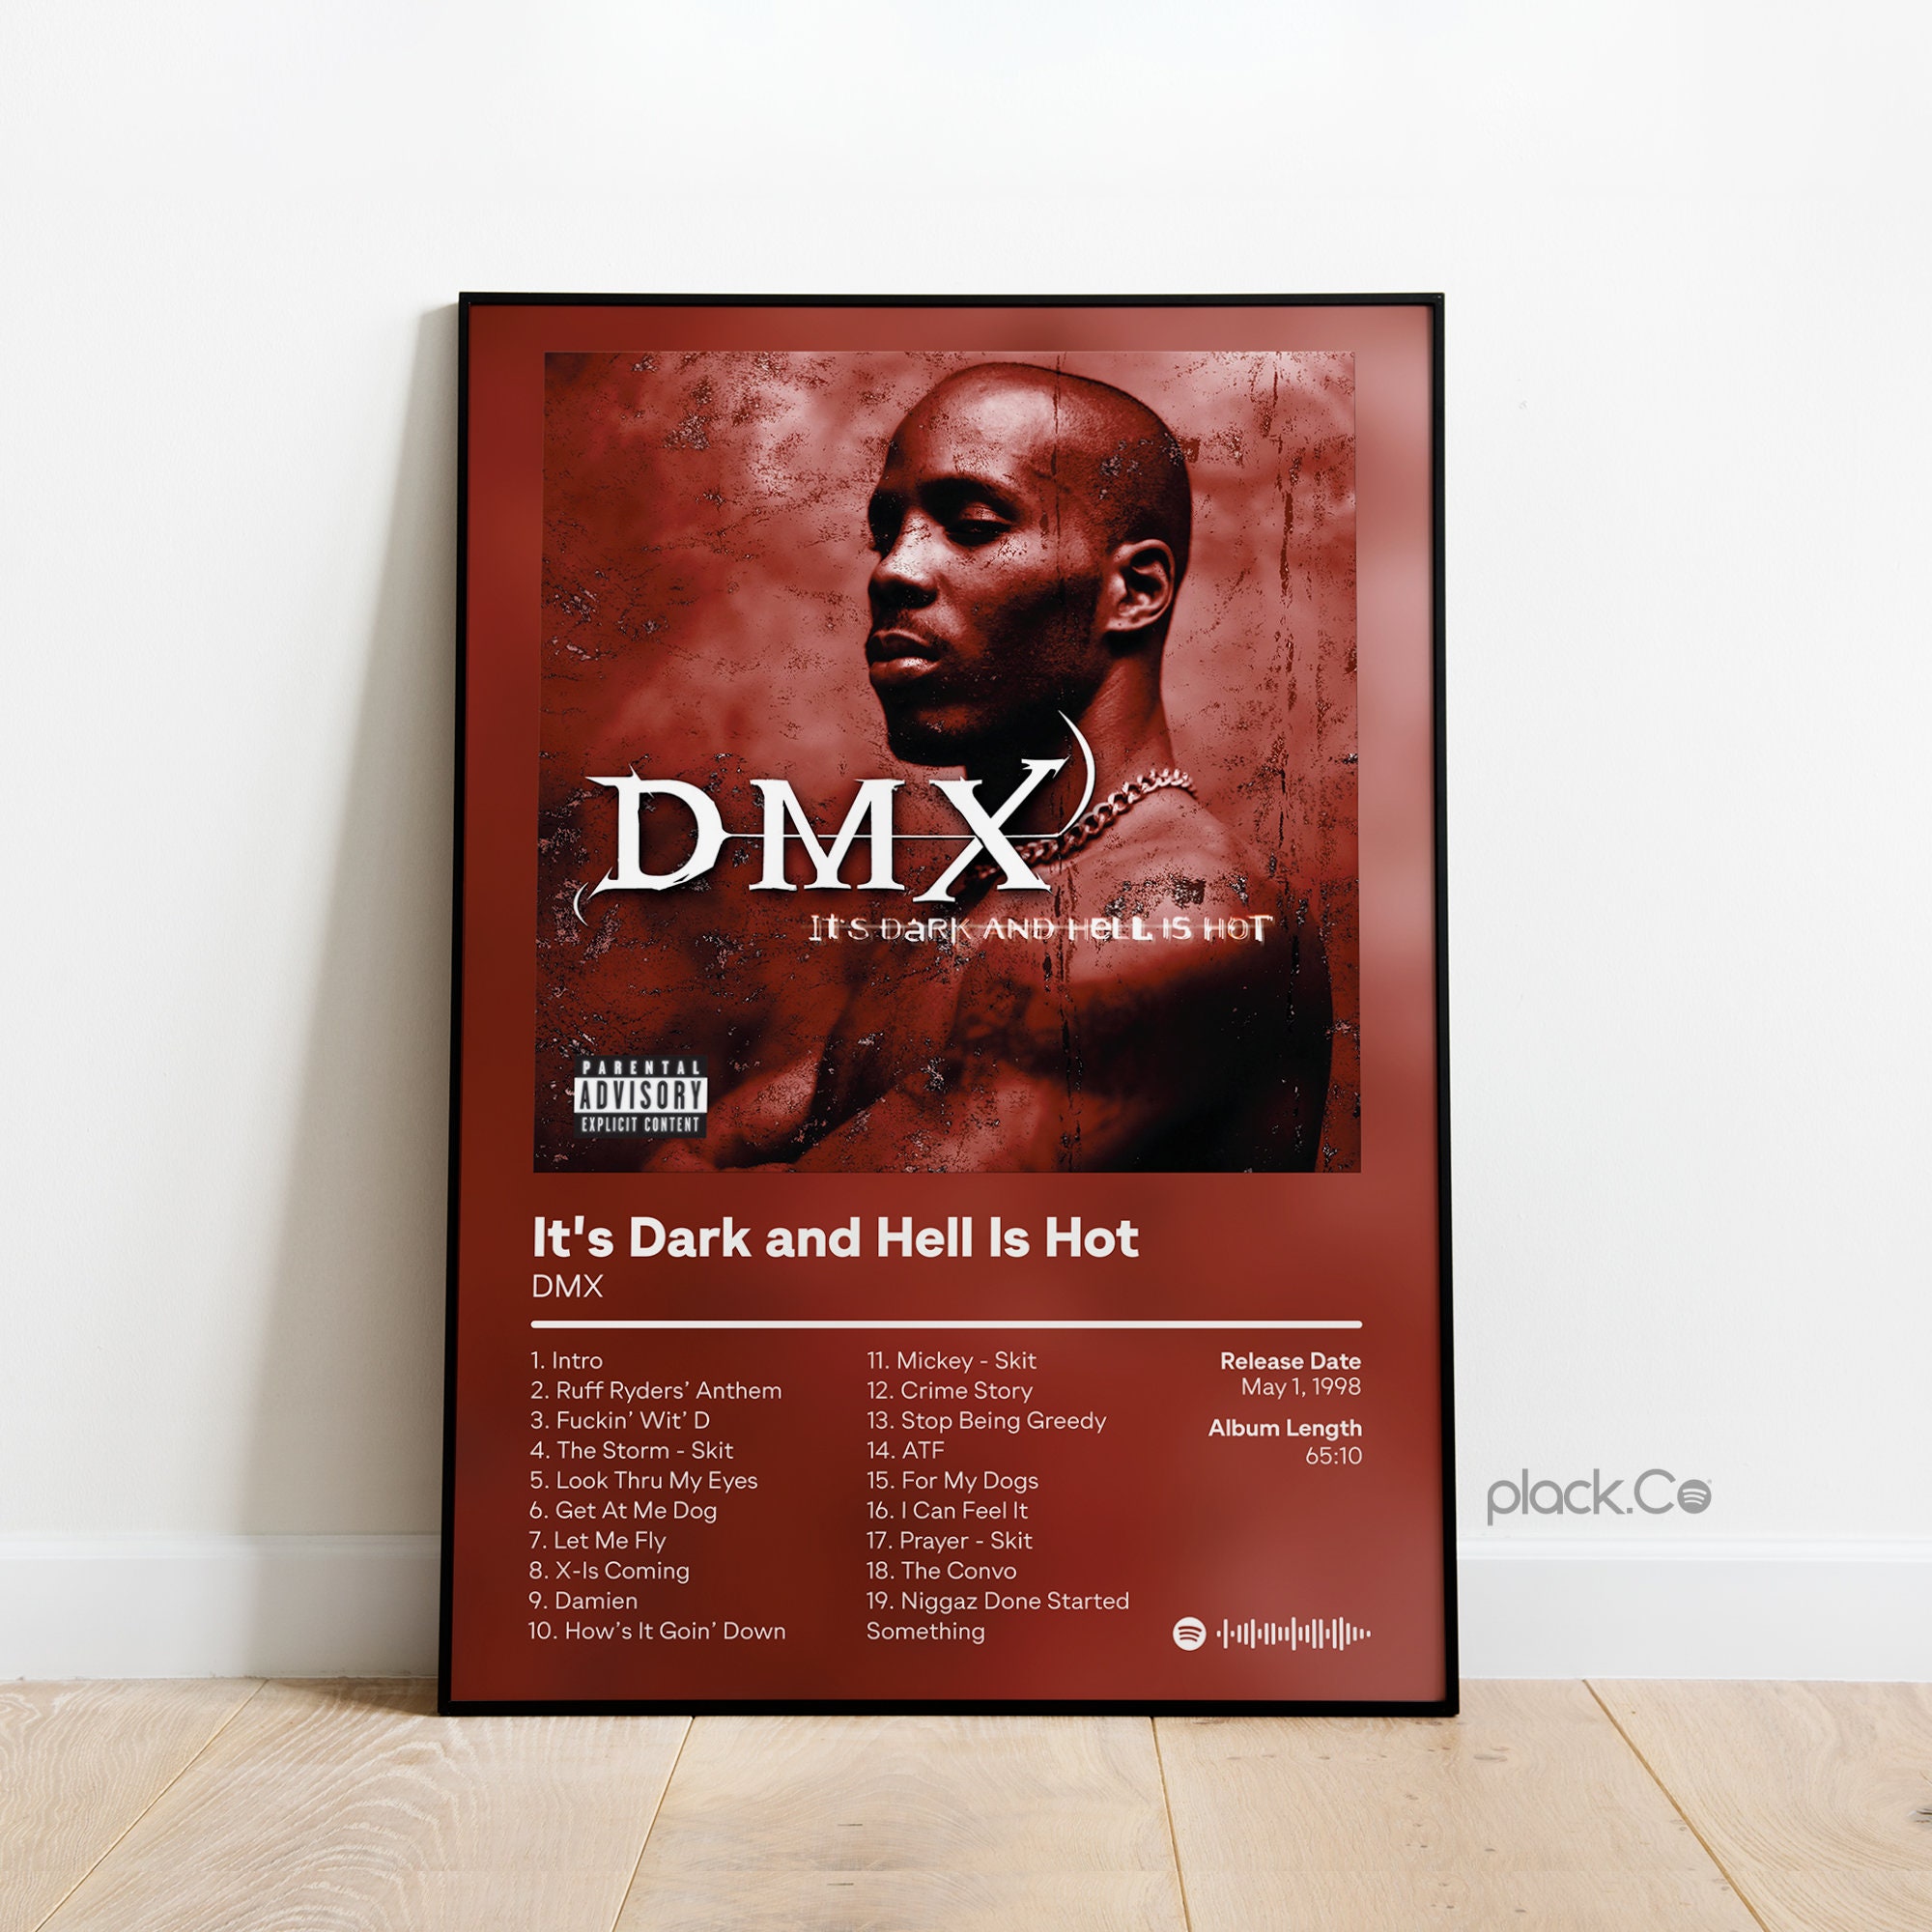 DMX 2017 NEW YORK CITY CONCERT TOUR POSTER - Hip Hop, Rap Music Legend